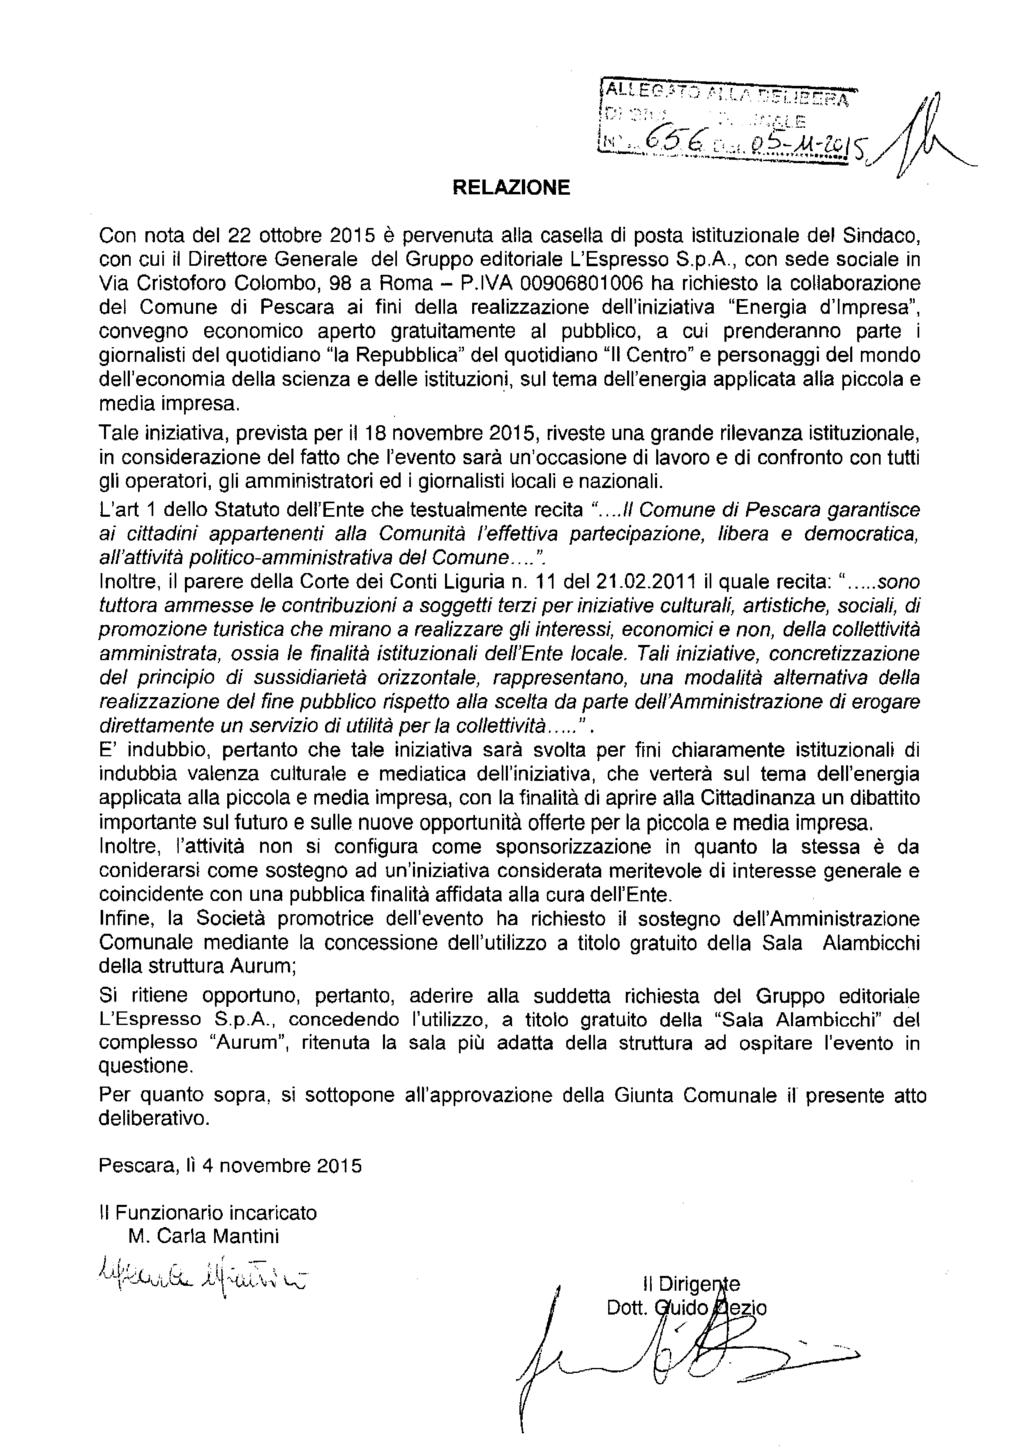 RELAZIONE Con nota del 22 ottobre 2015 è pervenuta alla casella di posta istituzionale del Sindaco, con cui il Direttore Generale del Gruppo editoriale L'Espresso S.p.A., con sede sociale in Via Cristoforo Colombo, 98 a Roma - P.